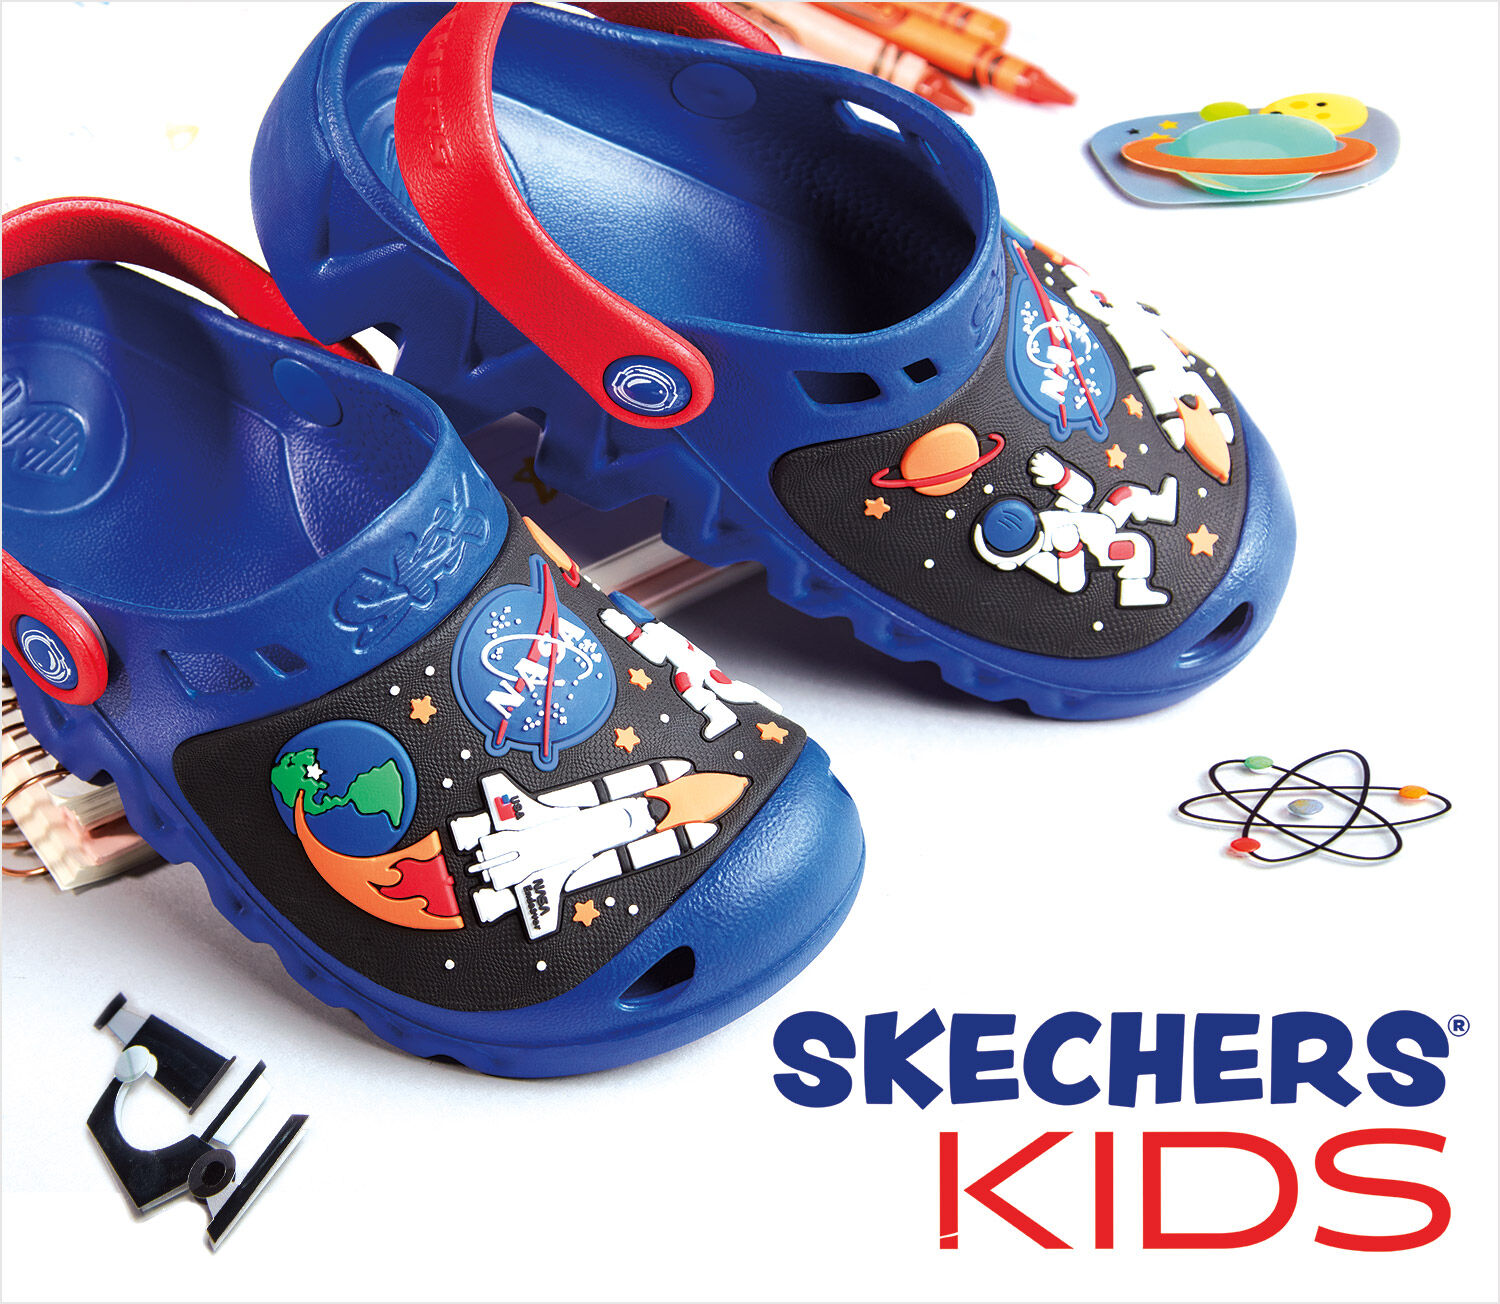 sketcher shoes kids